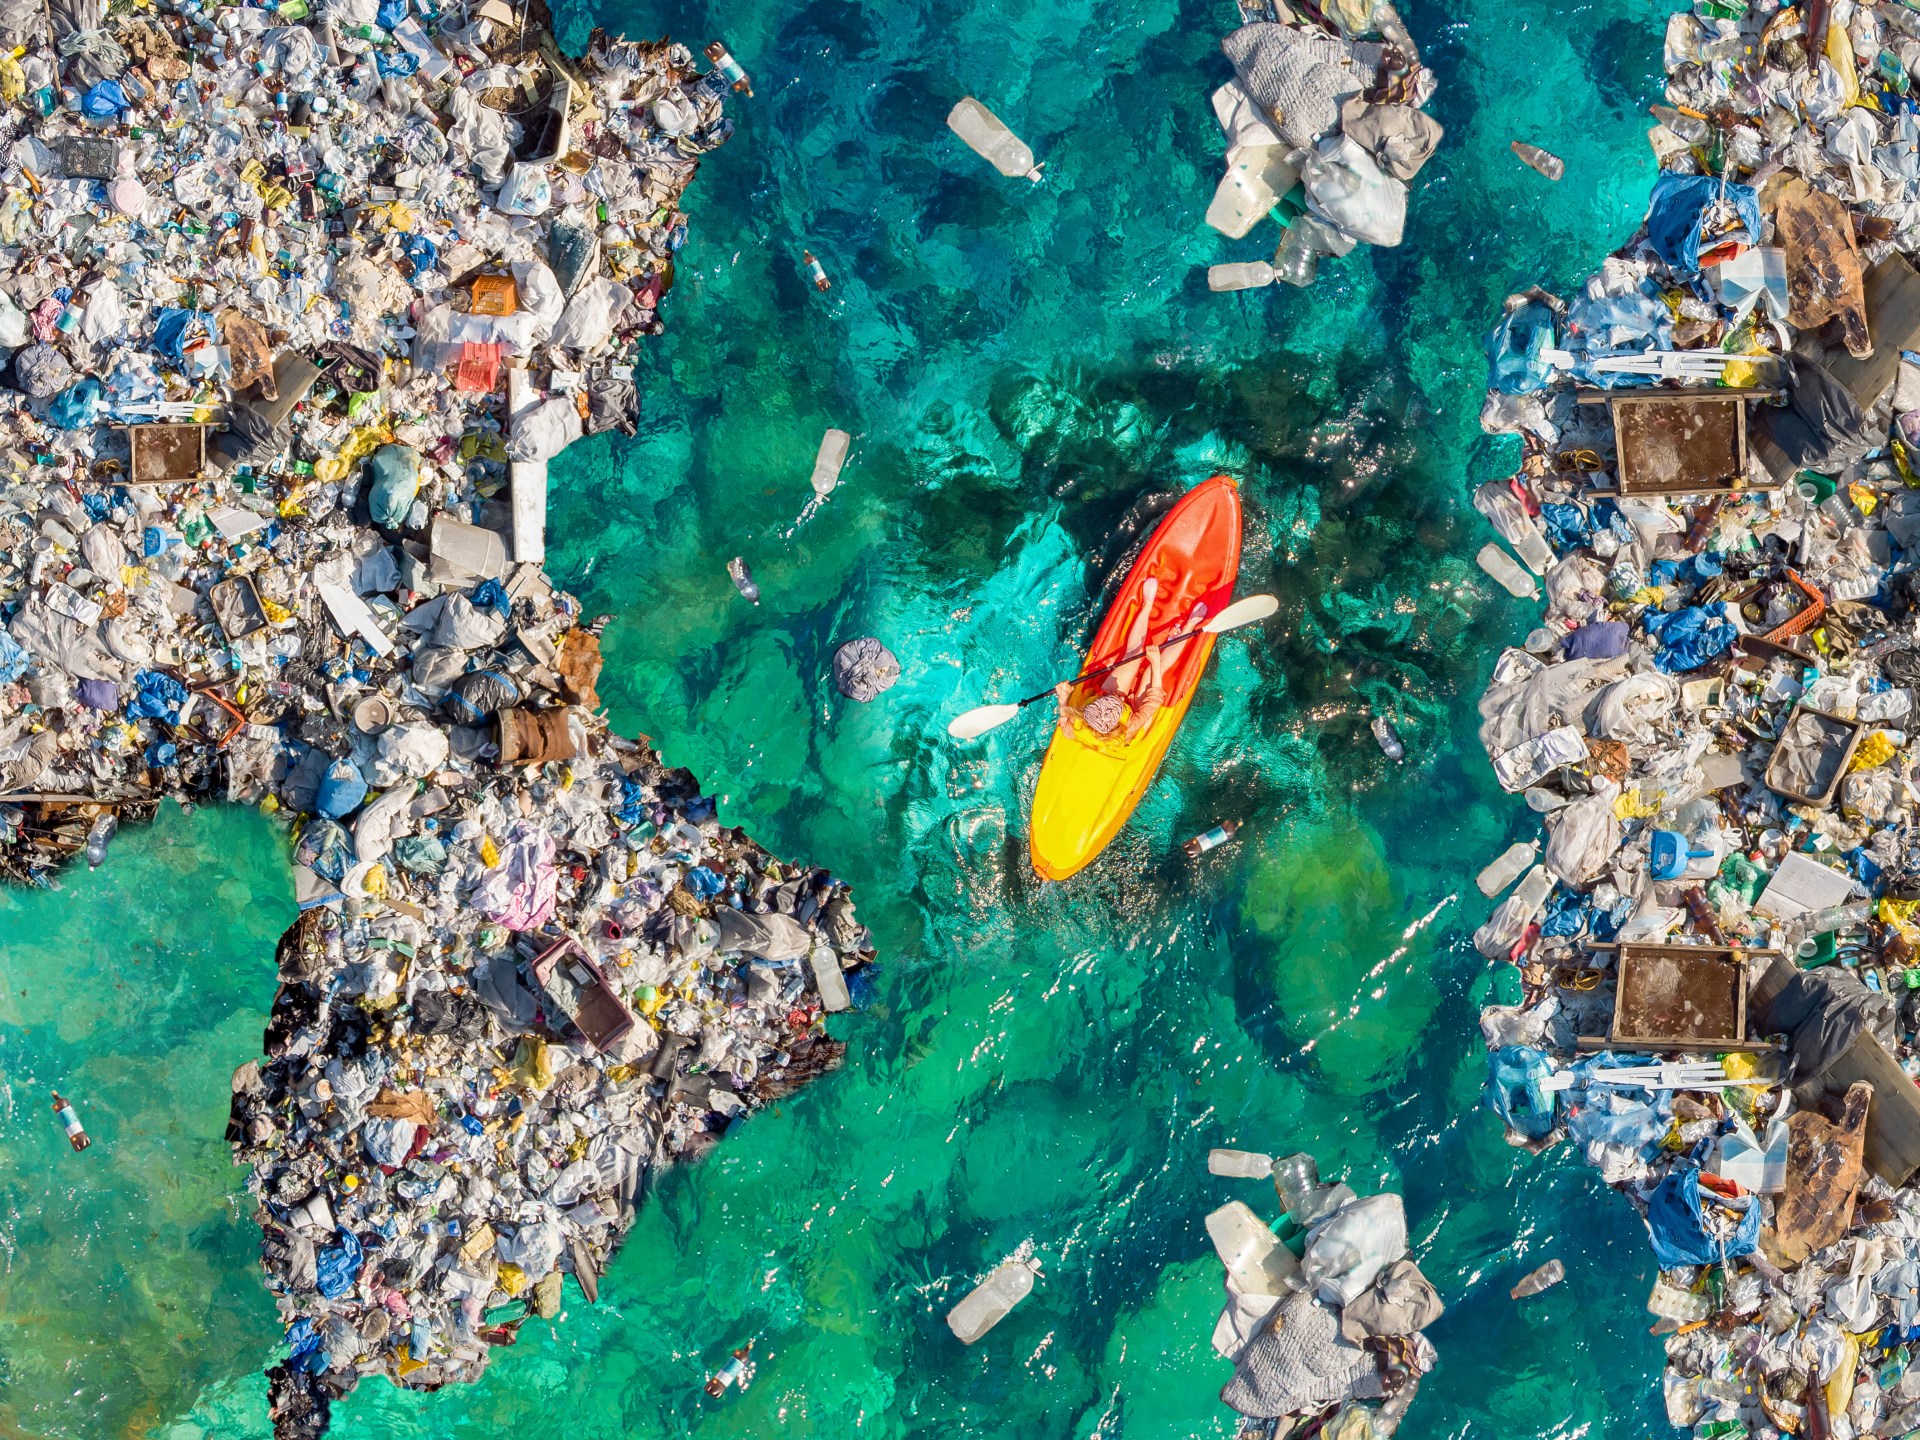 أول معاهدة عالمية للحد من التلوث البلاستيكي تلوح في الأفق | علوم – البوكس نيوز